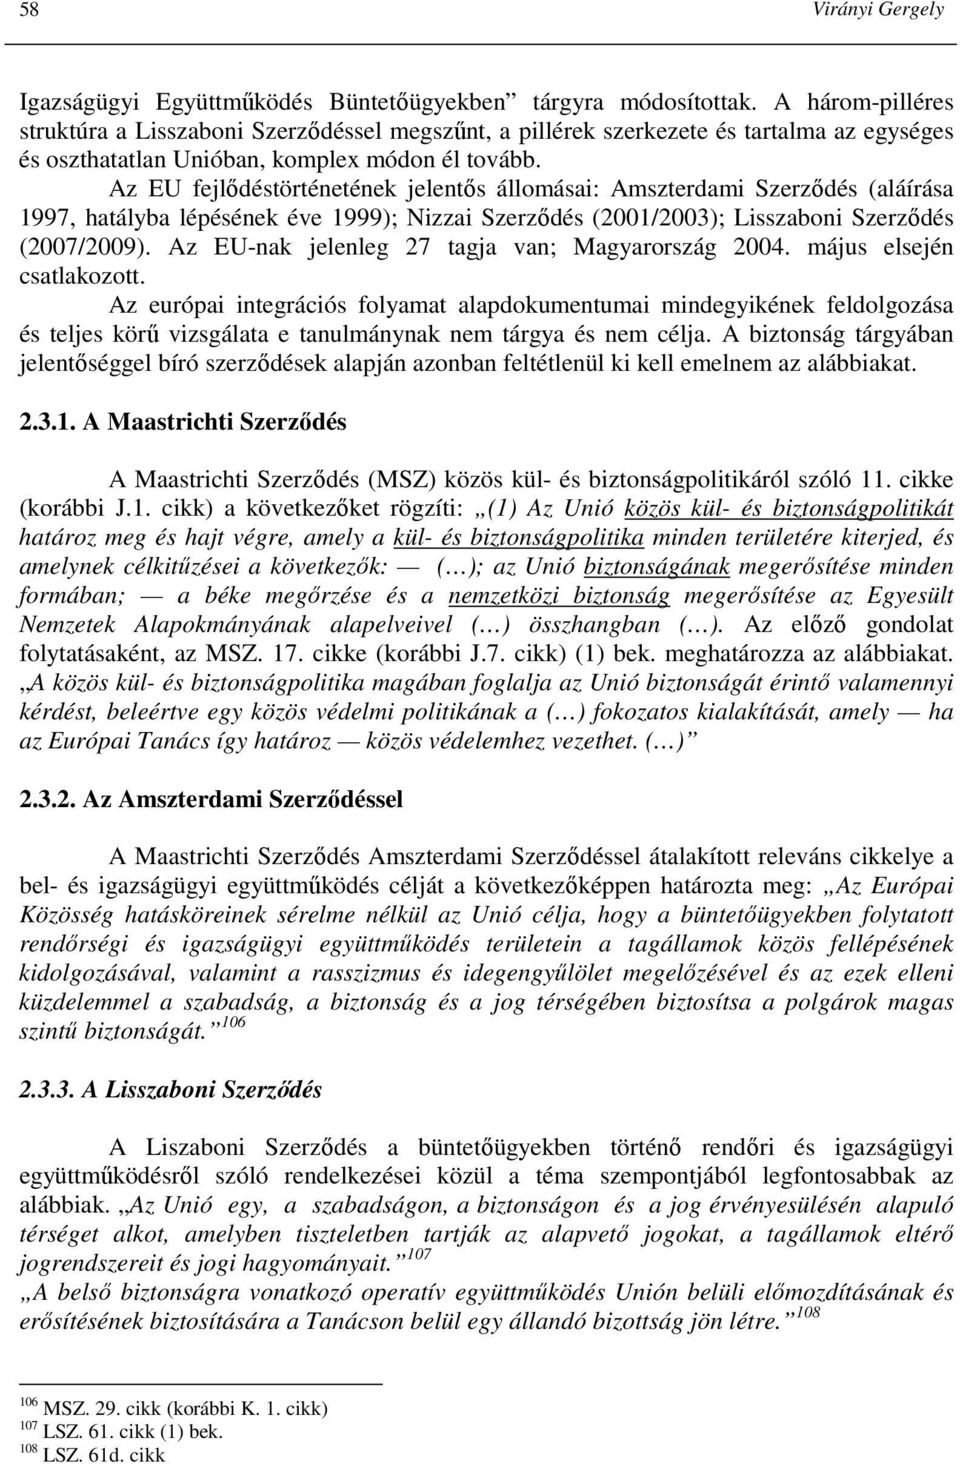 Az EU fejlıdéstörténetének jelentıs állomásai: Amszterdami Szerzıdés (aláírása 1997, hatályba lépésének éve 1999); Nizzai Szerzıdés (2001/2003); Lisszaboni Szerzıdés (2007/2009).